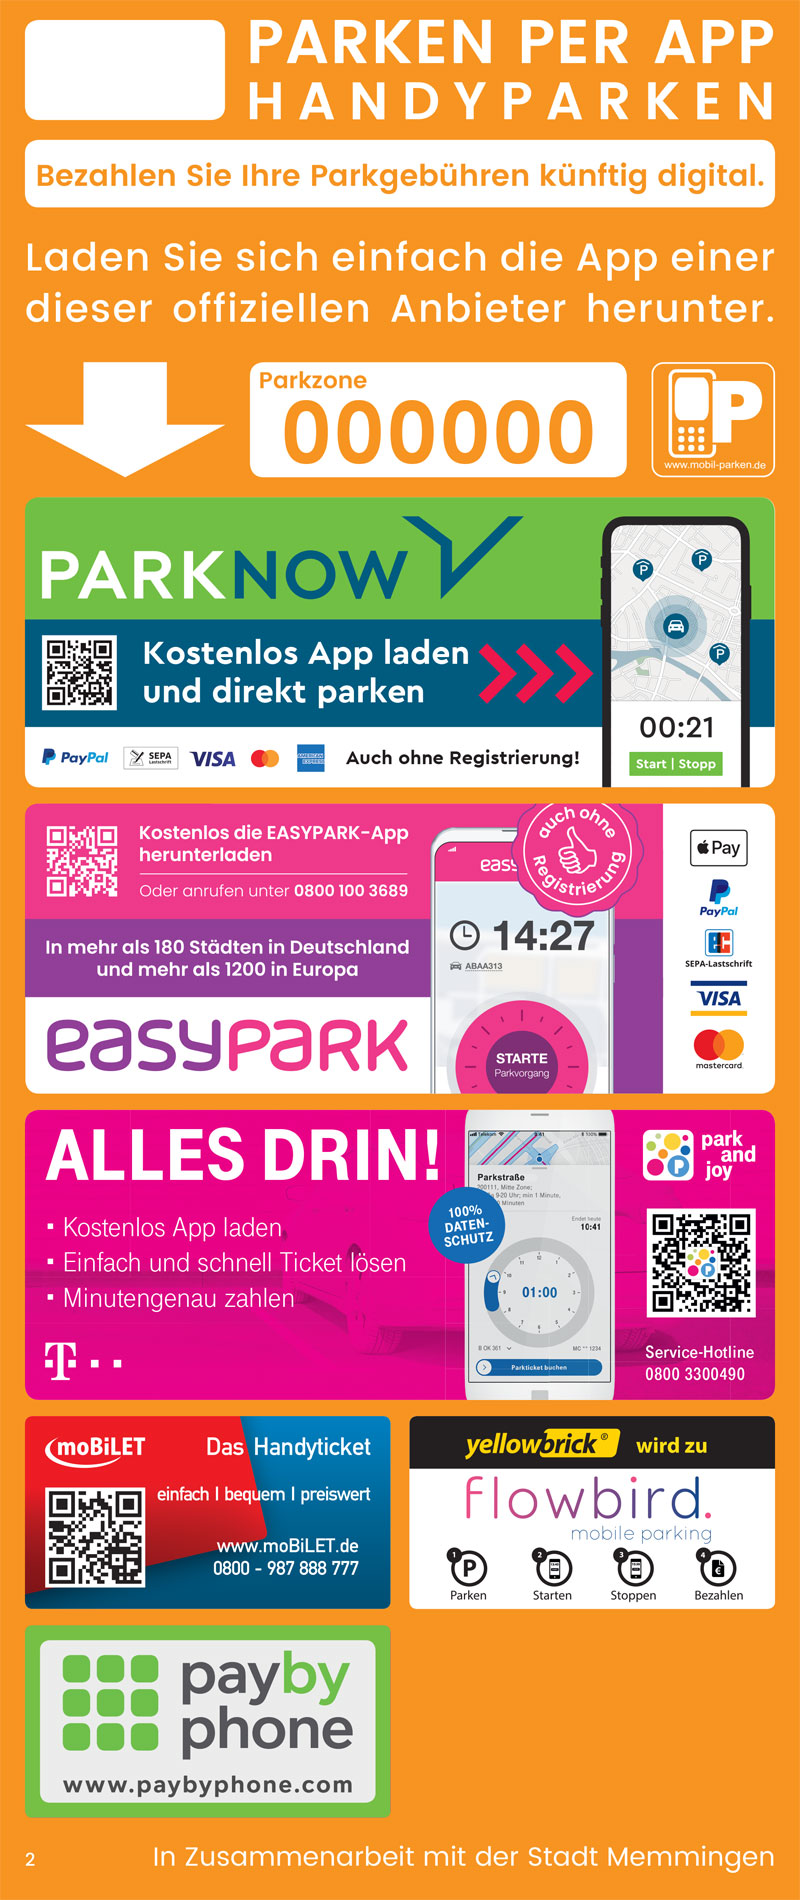 Smartparking: Parkgebühren mit dem Handy zahlen